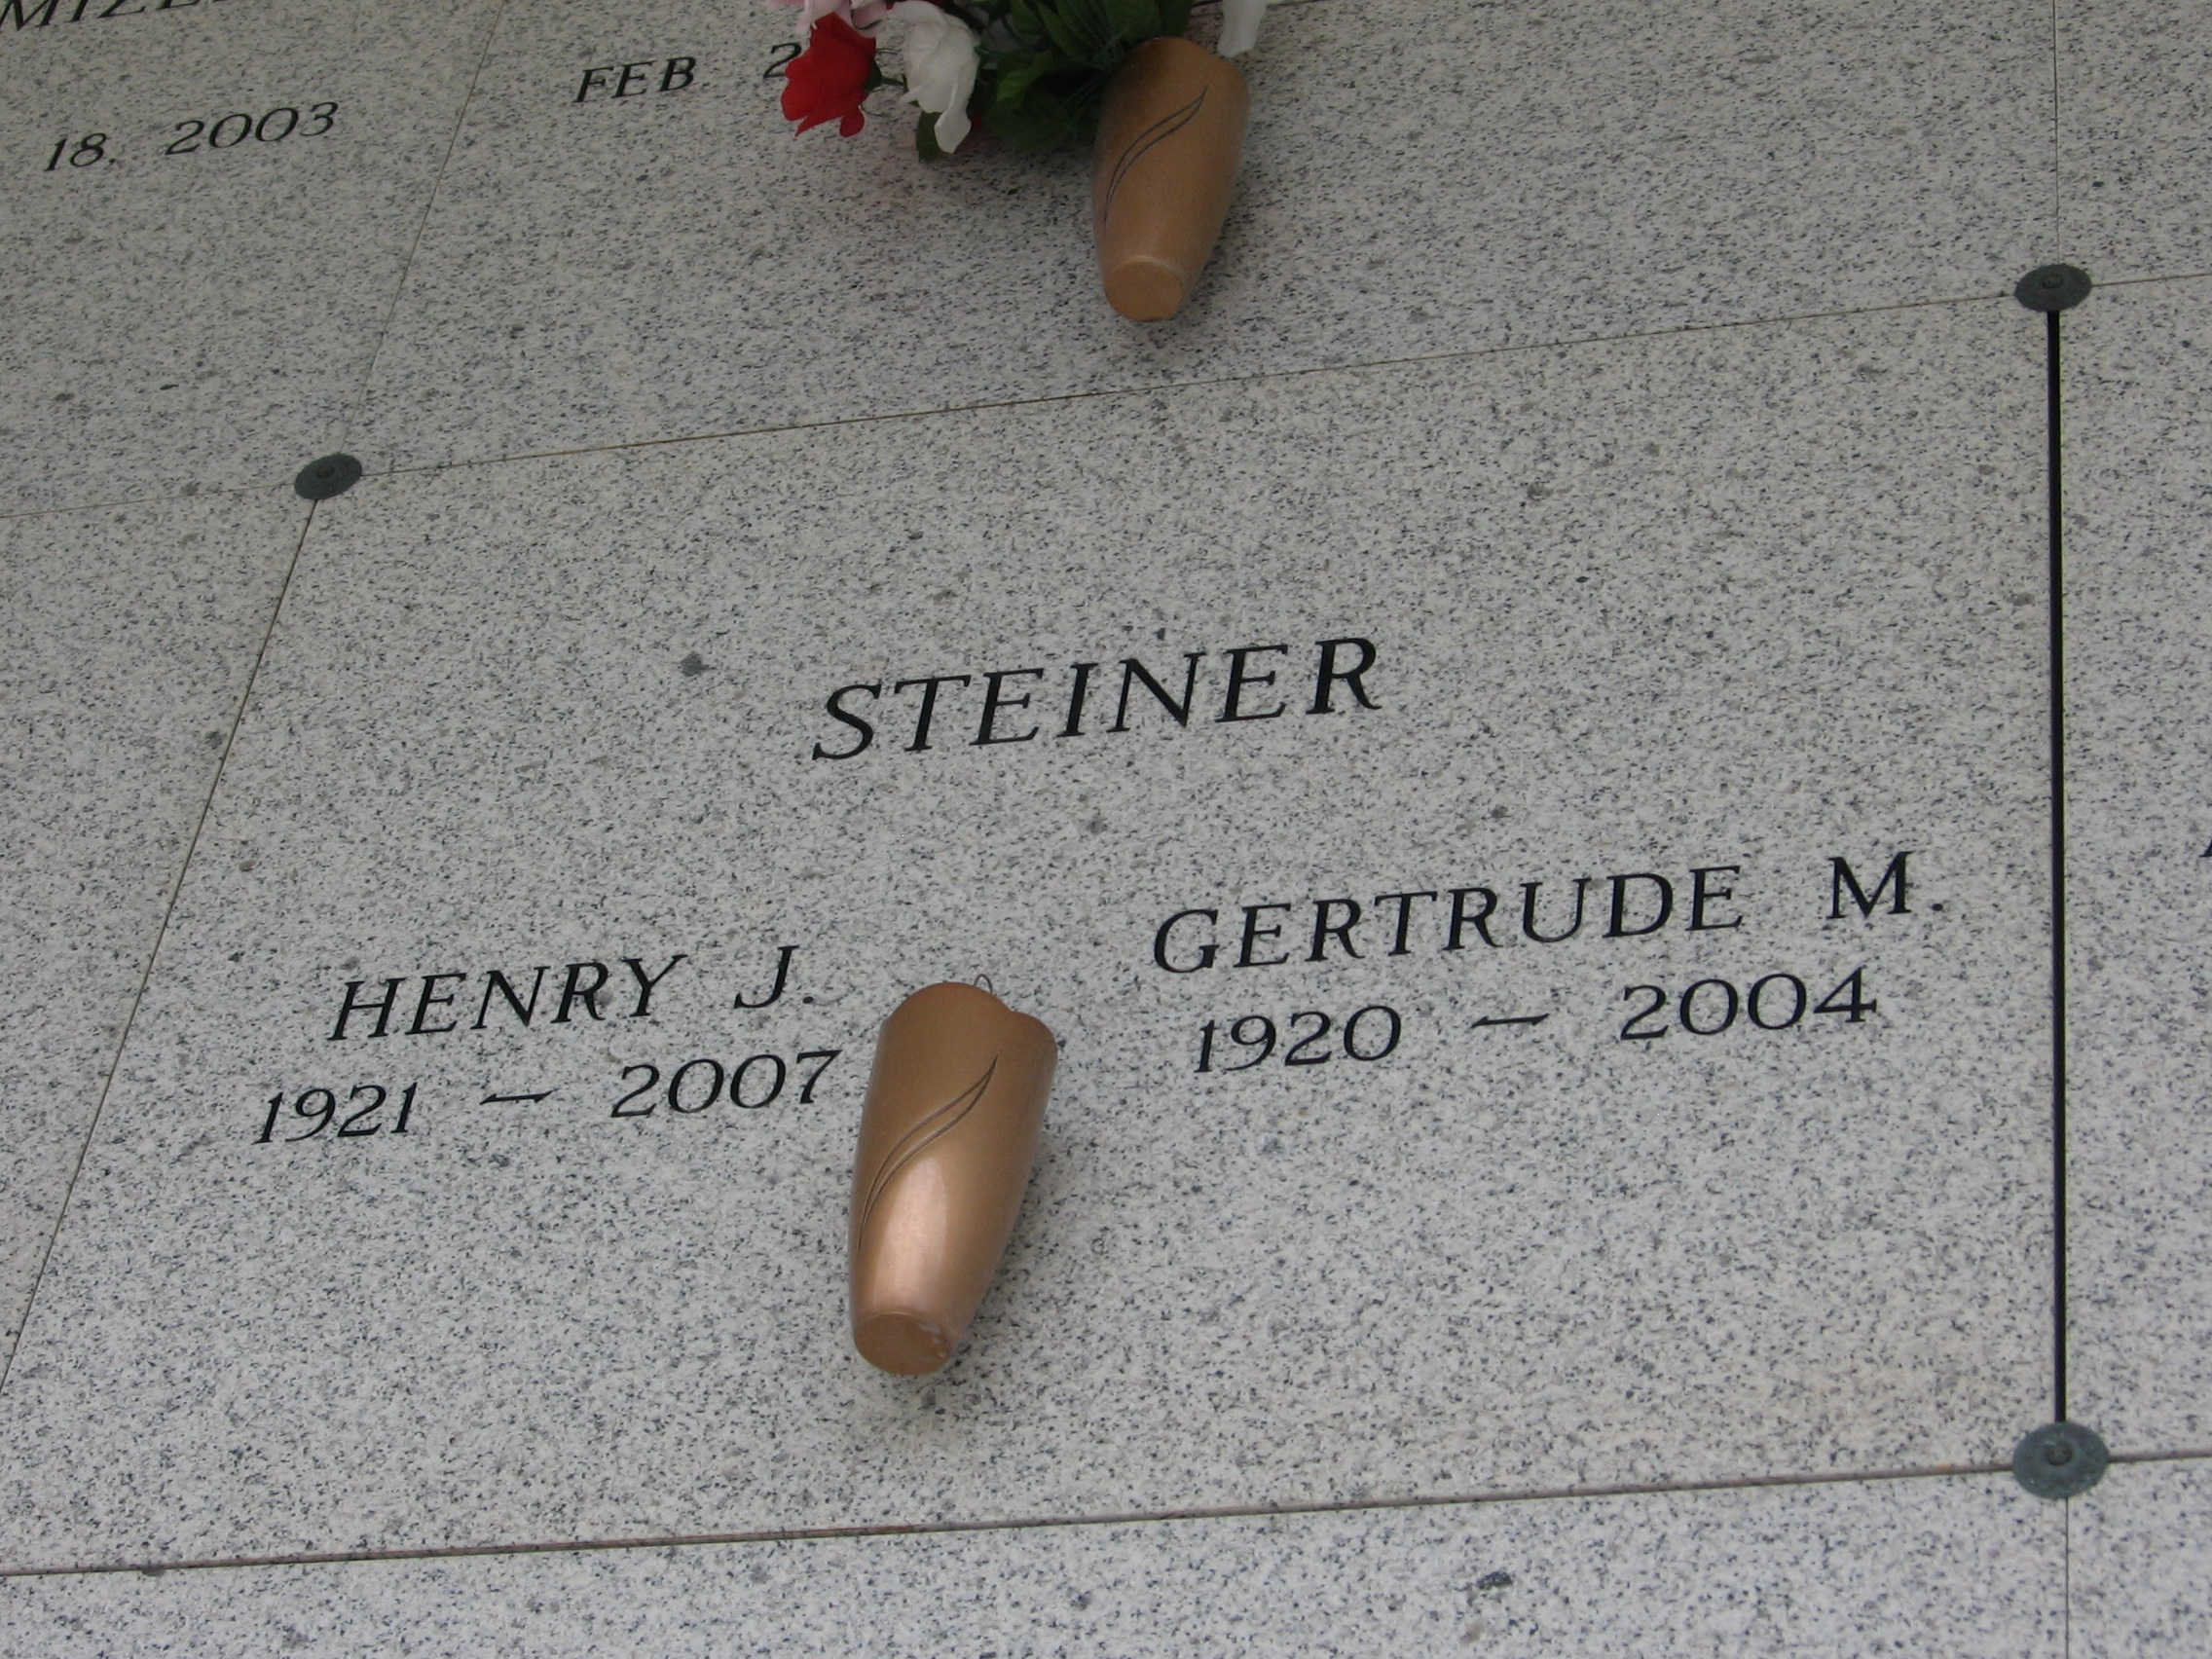 Gertrude M Steiner